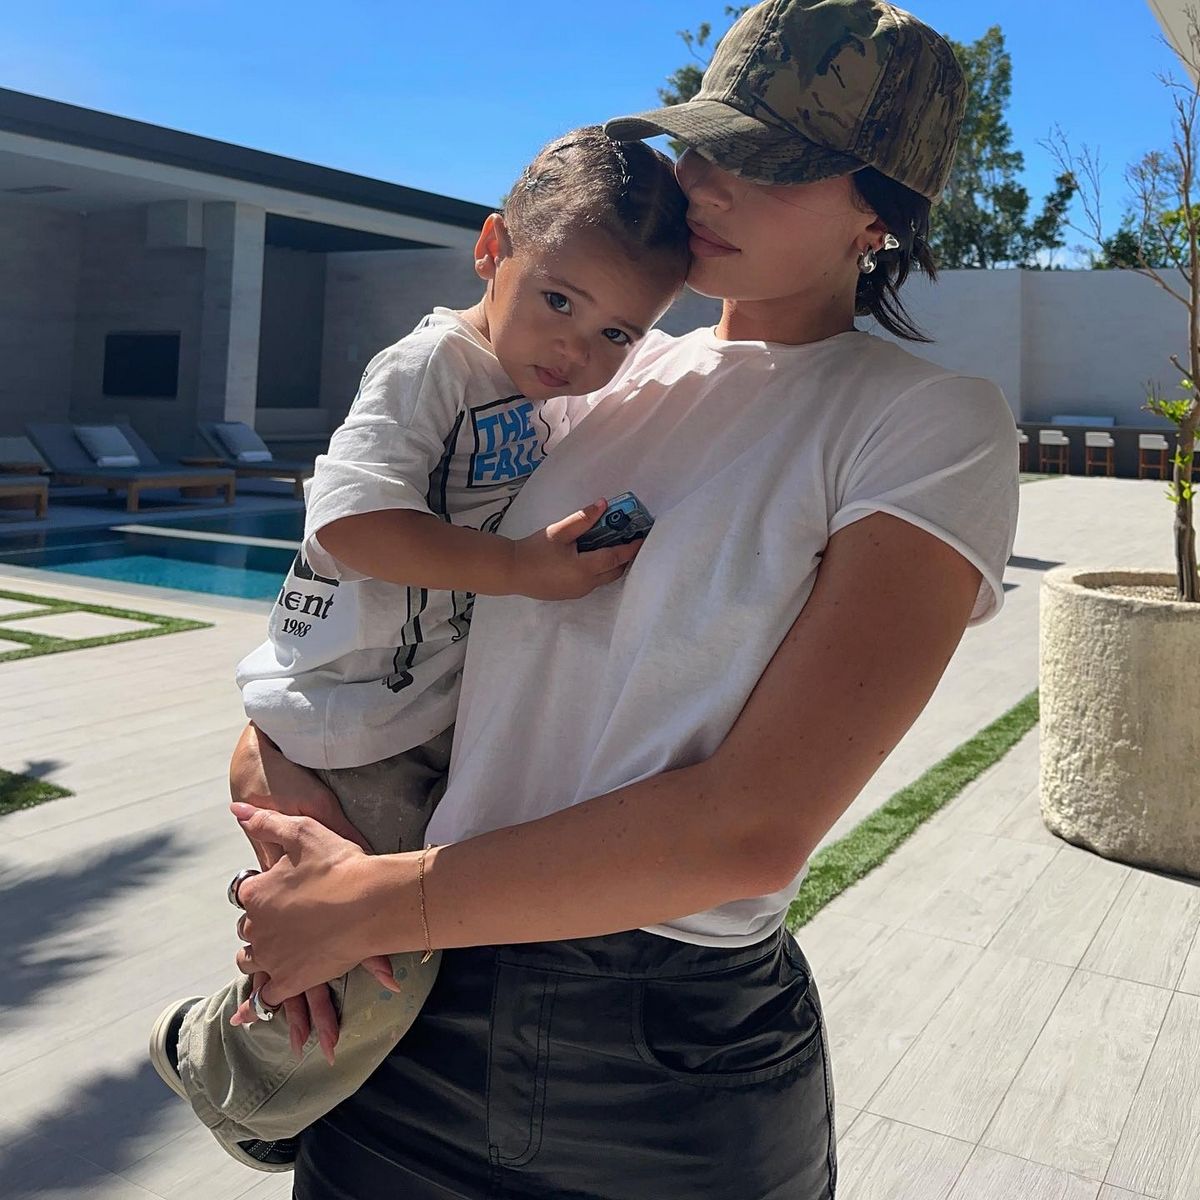 Vendredi, Kylie Jenner s’est livrée à des moments ludiques avec son fils de 17 mois, Aire, profitant du temps qu’ils passent ensemble.